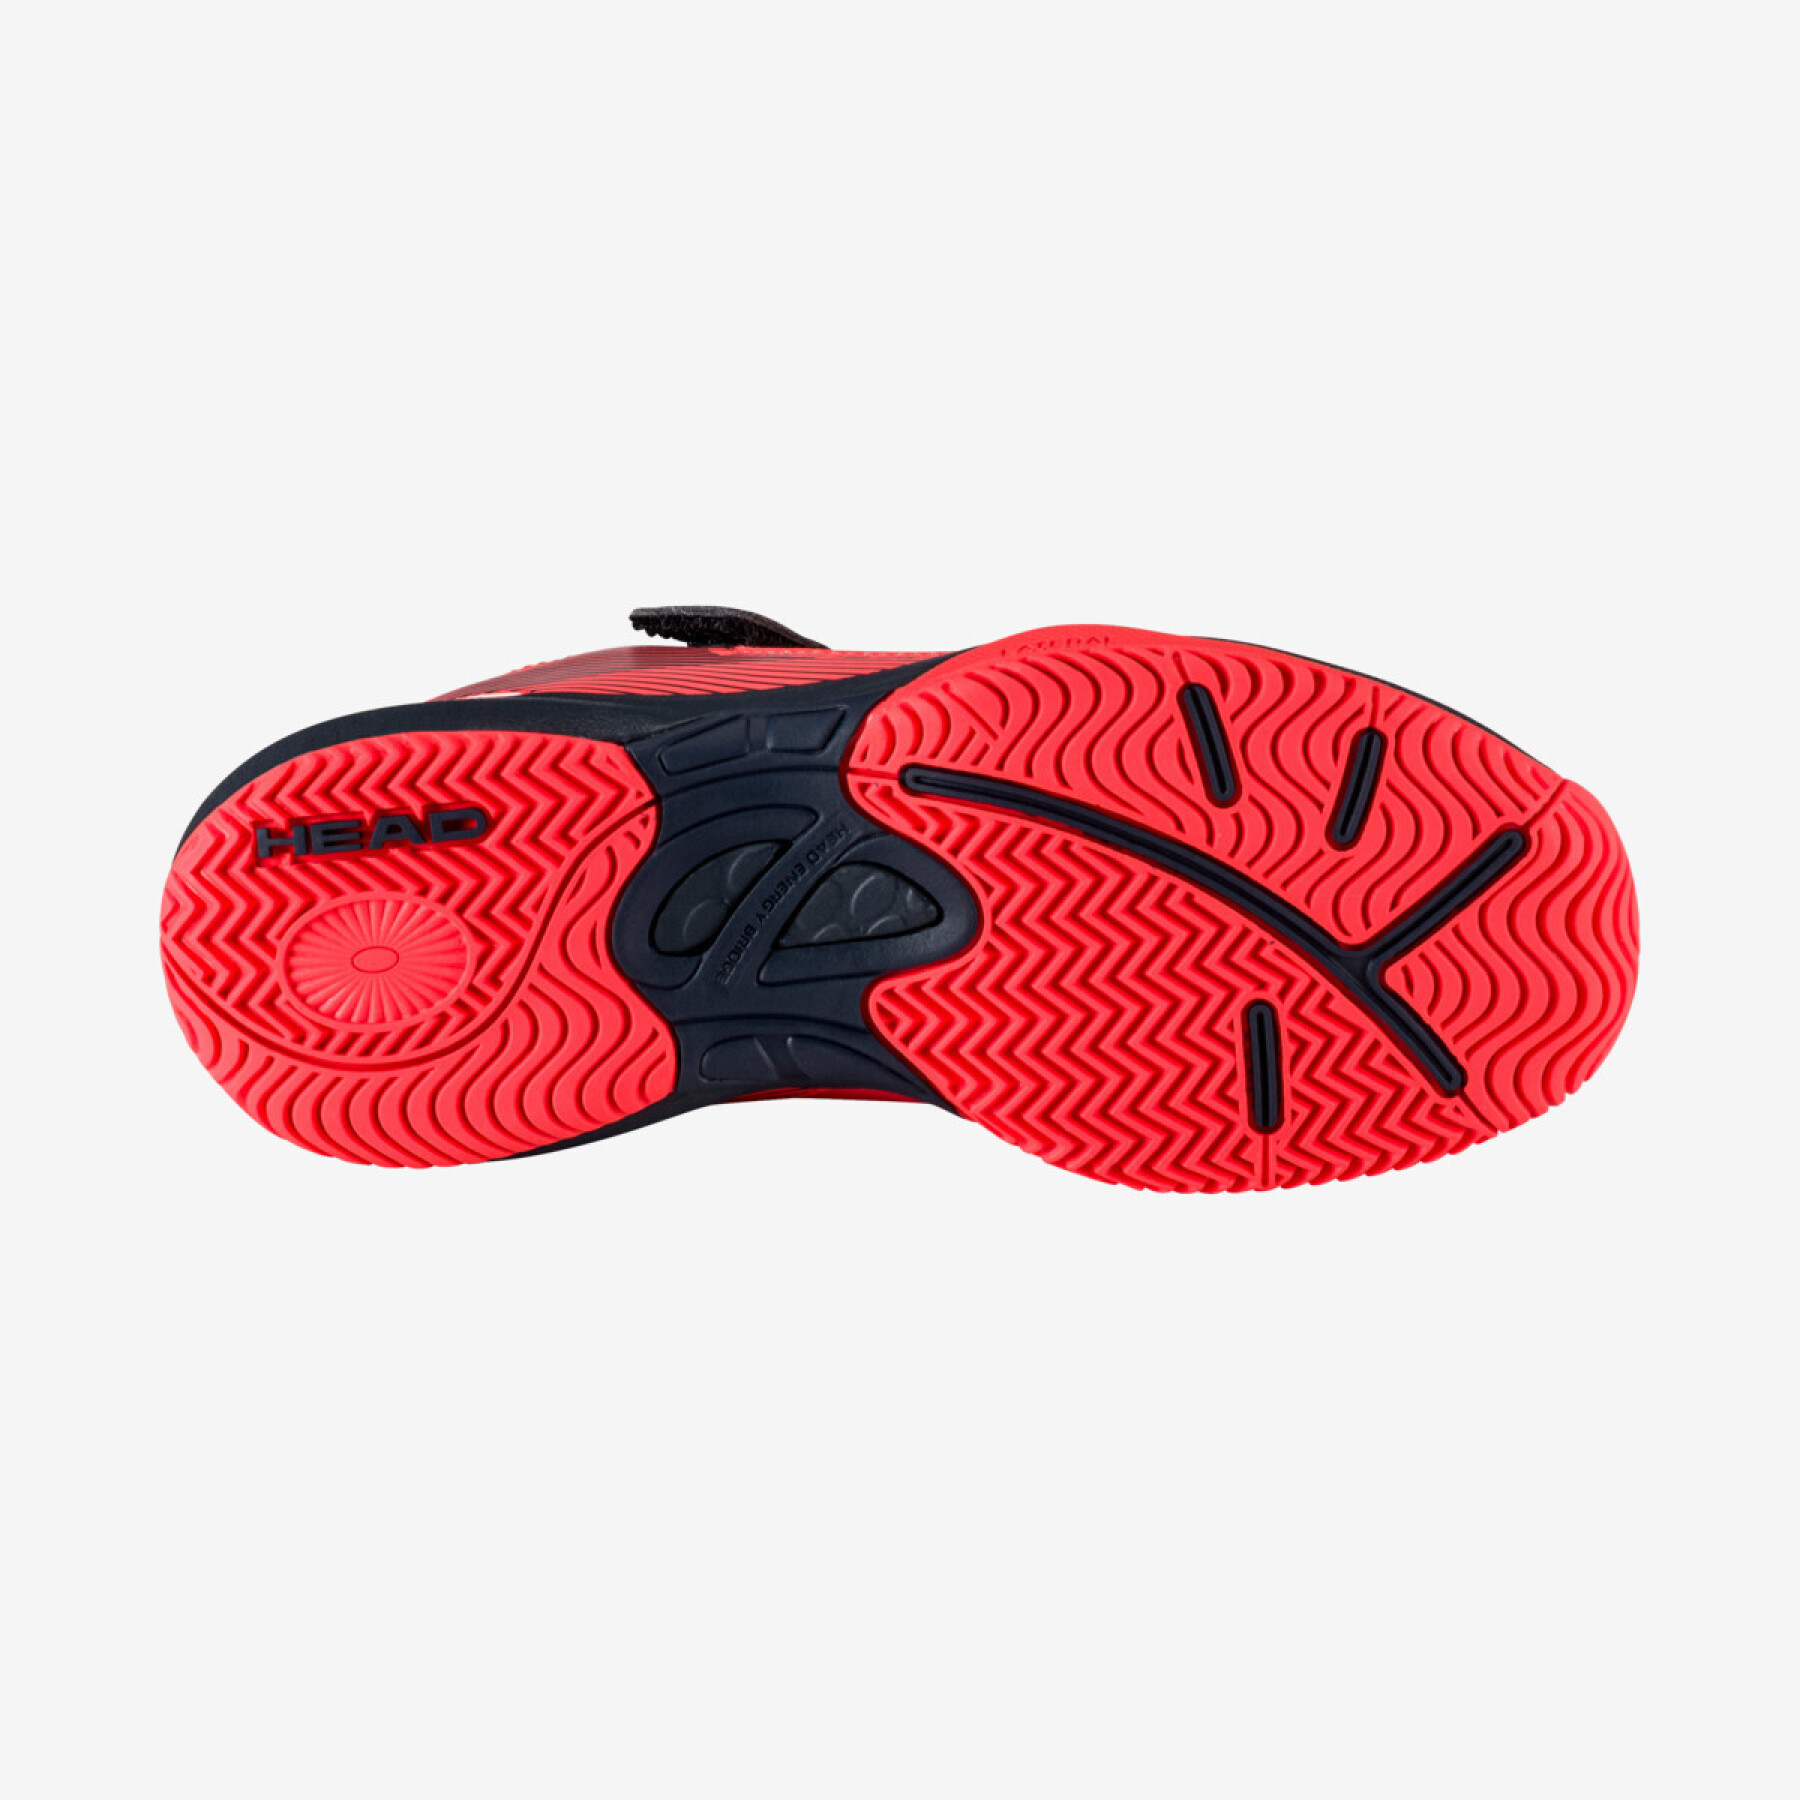 Zapatillas de tenis para niños Head Sprint Velcro 3.0